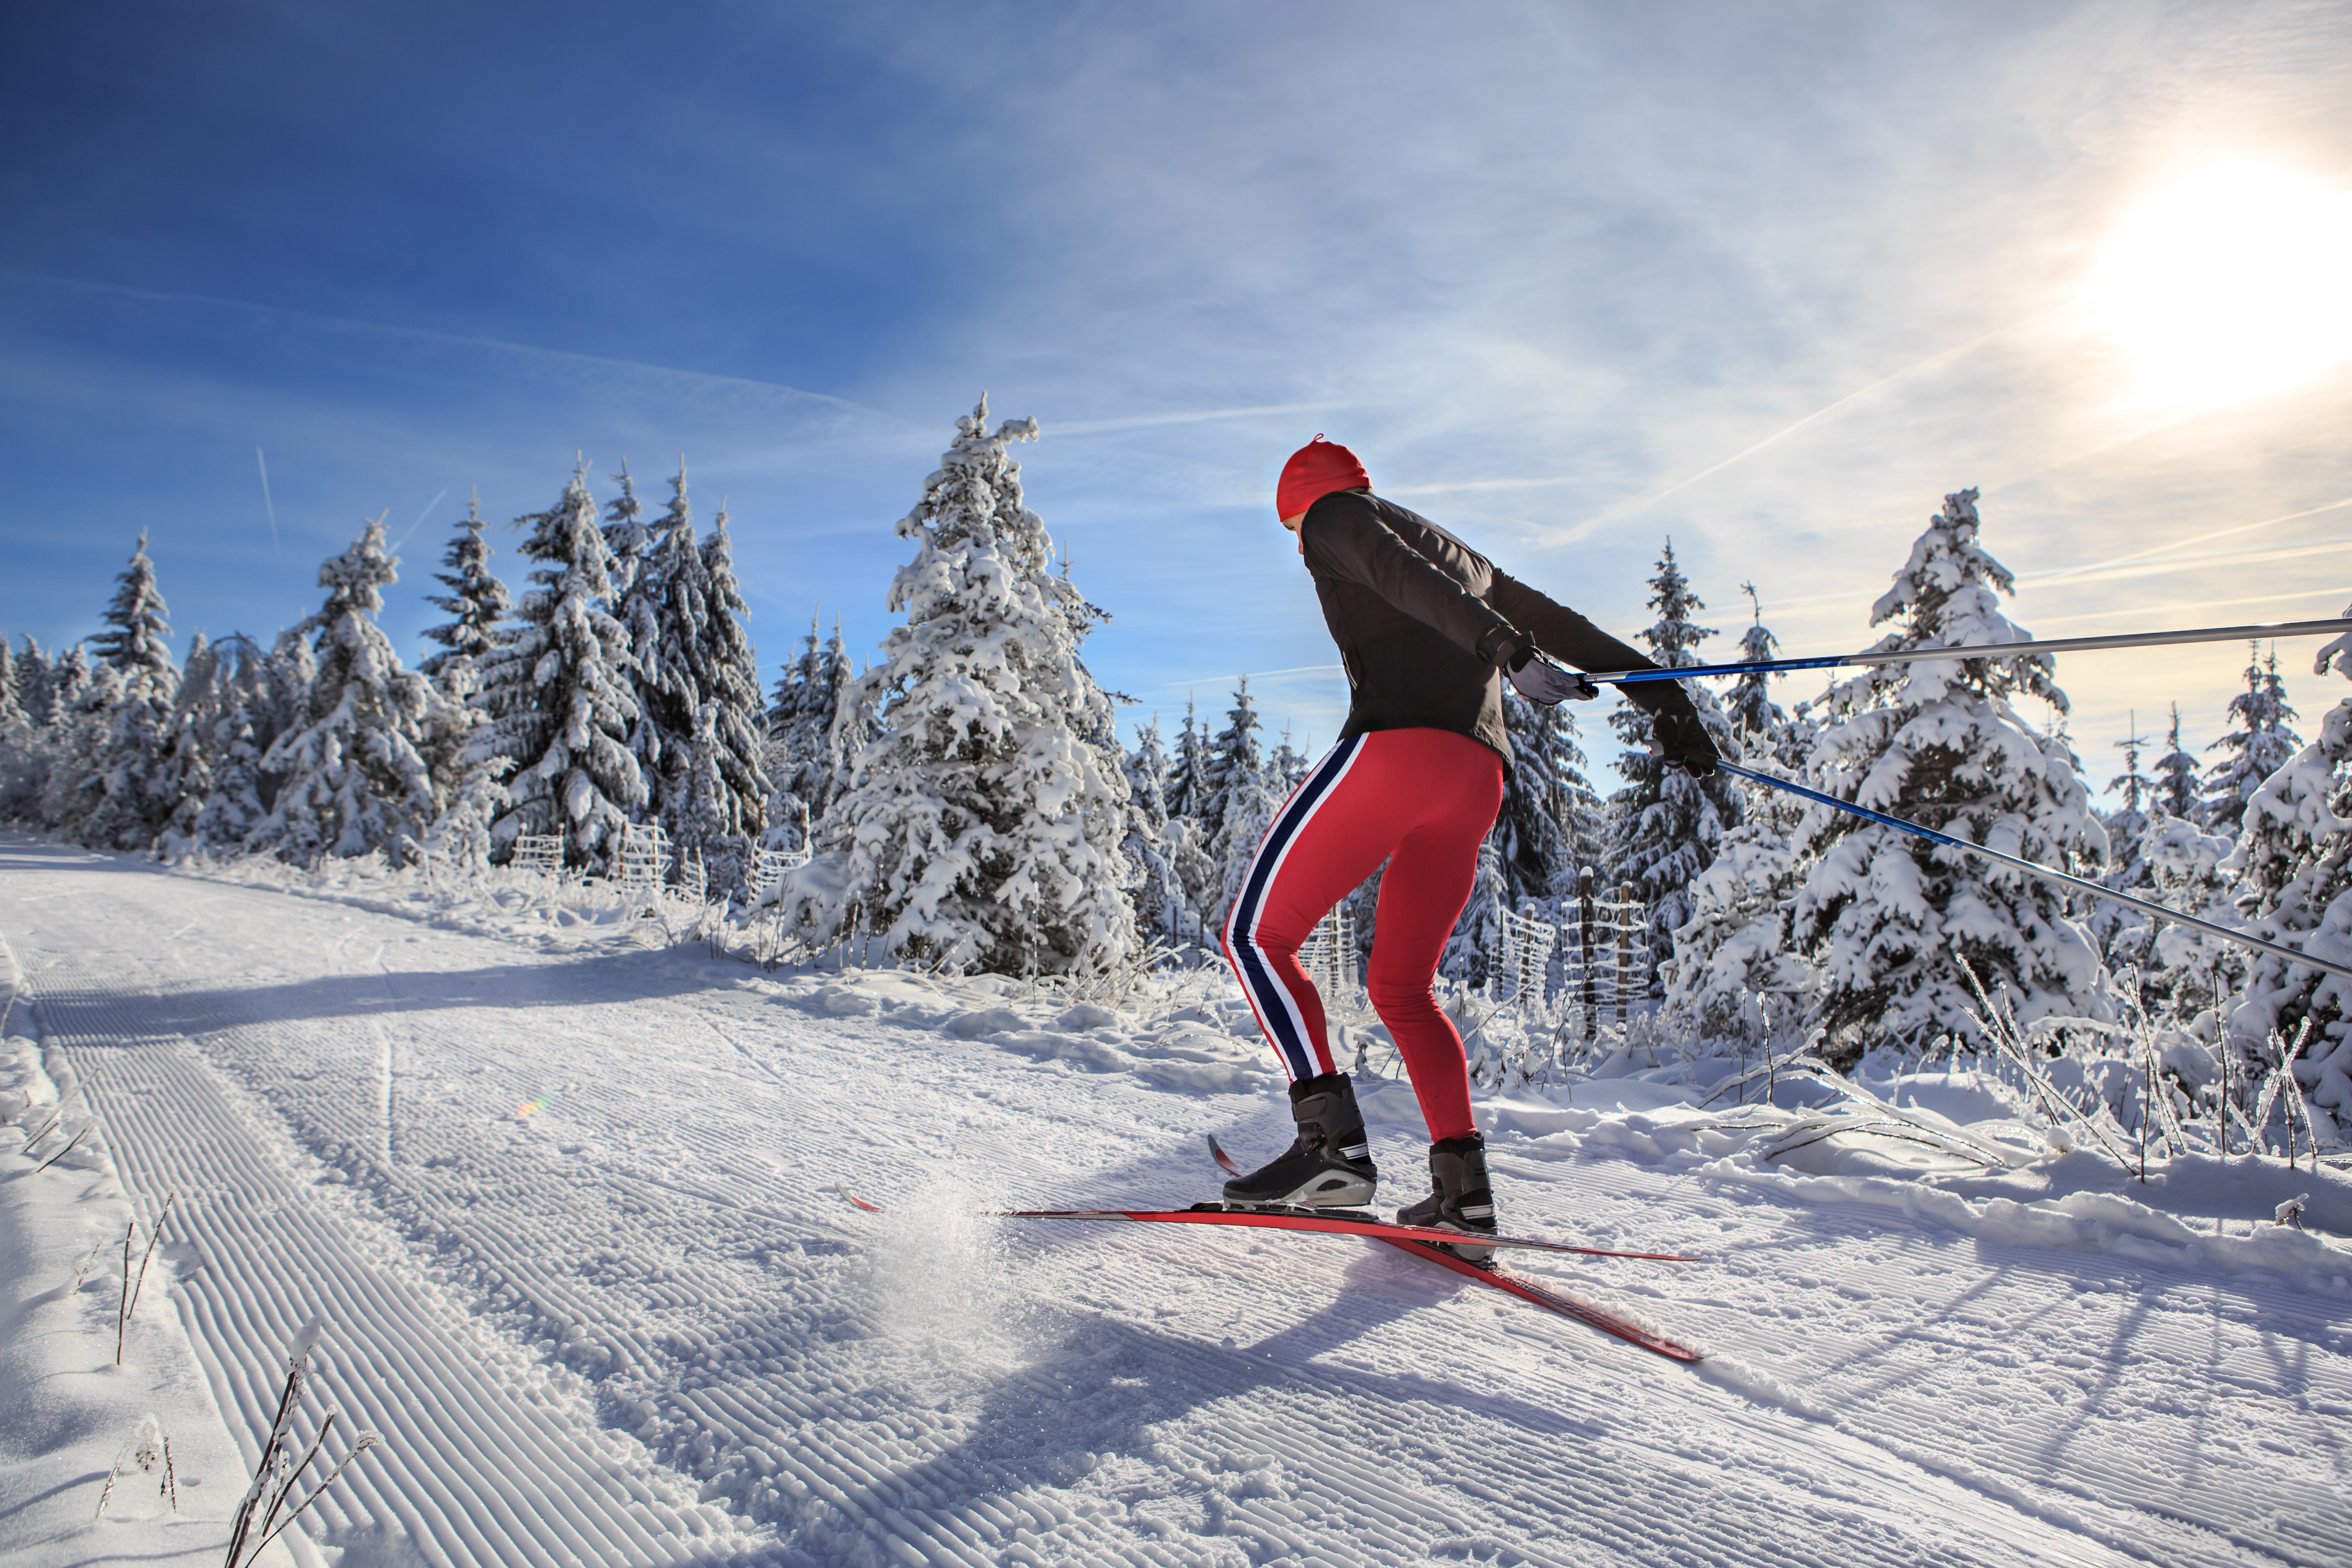 Фото skiing. Зимний спорт. Лыжник. Беговые лыжи. Лыжник на беговых лыжах.